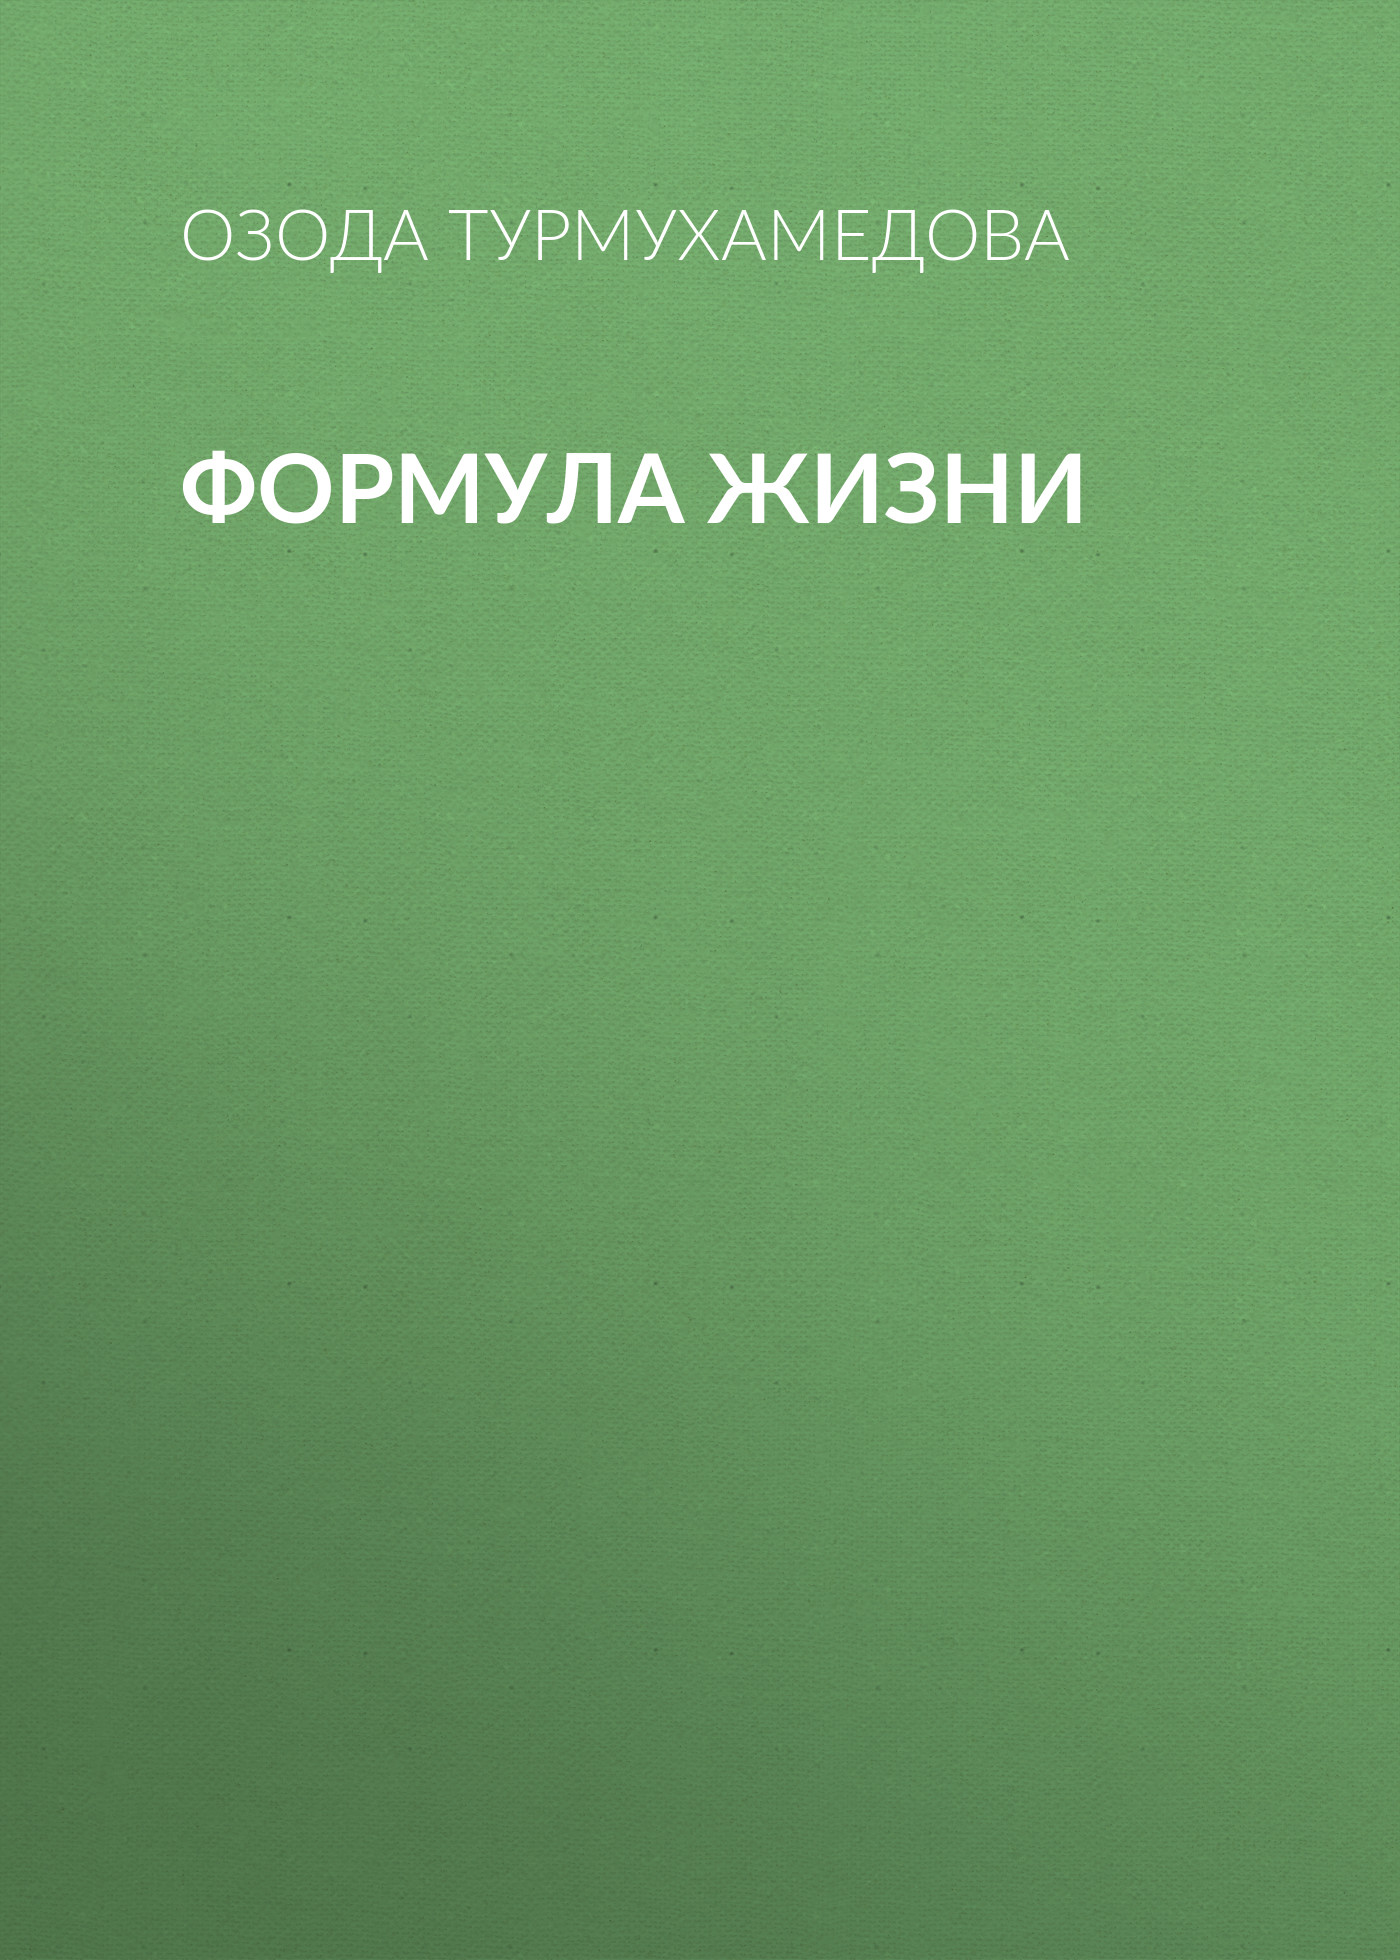 Книга Формула жизни из серии , созданная Озода Турмухамедова, может относится к жанру Личностный рост. Стоимость электронной книги Формула жизни с идентификатором 33167072 составляет 149.00 руб.